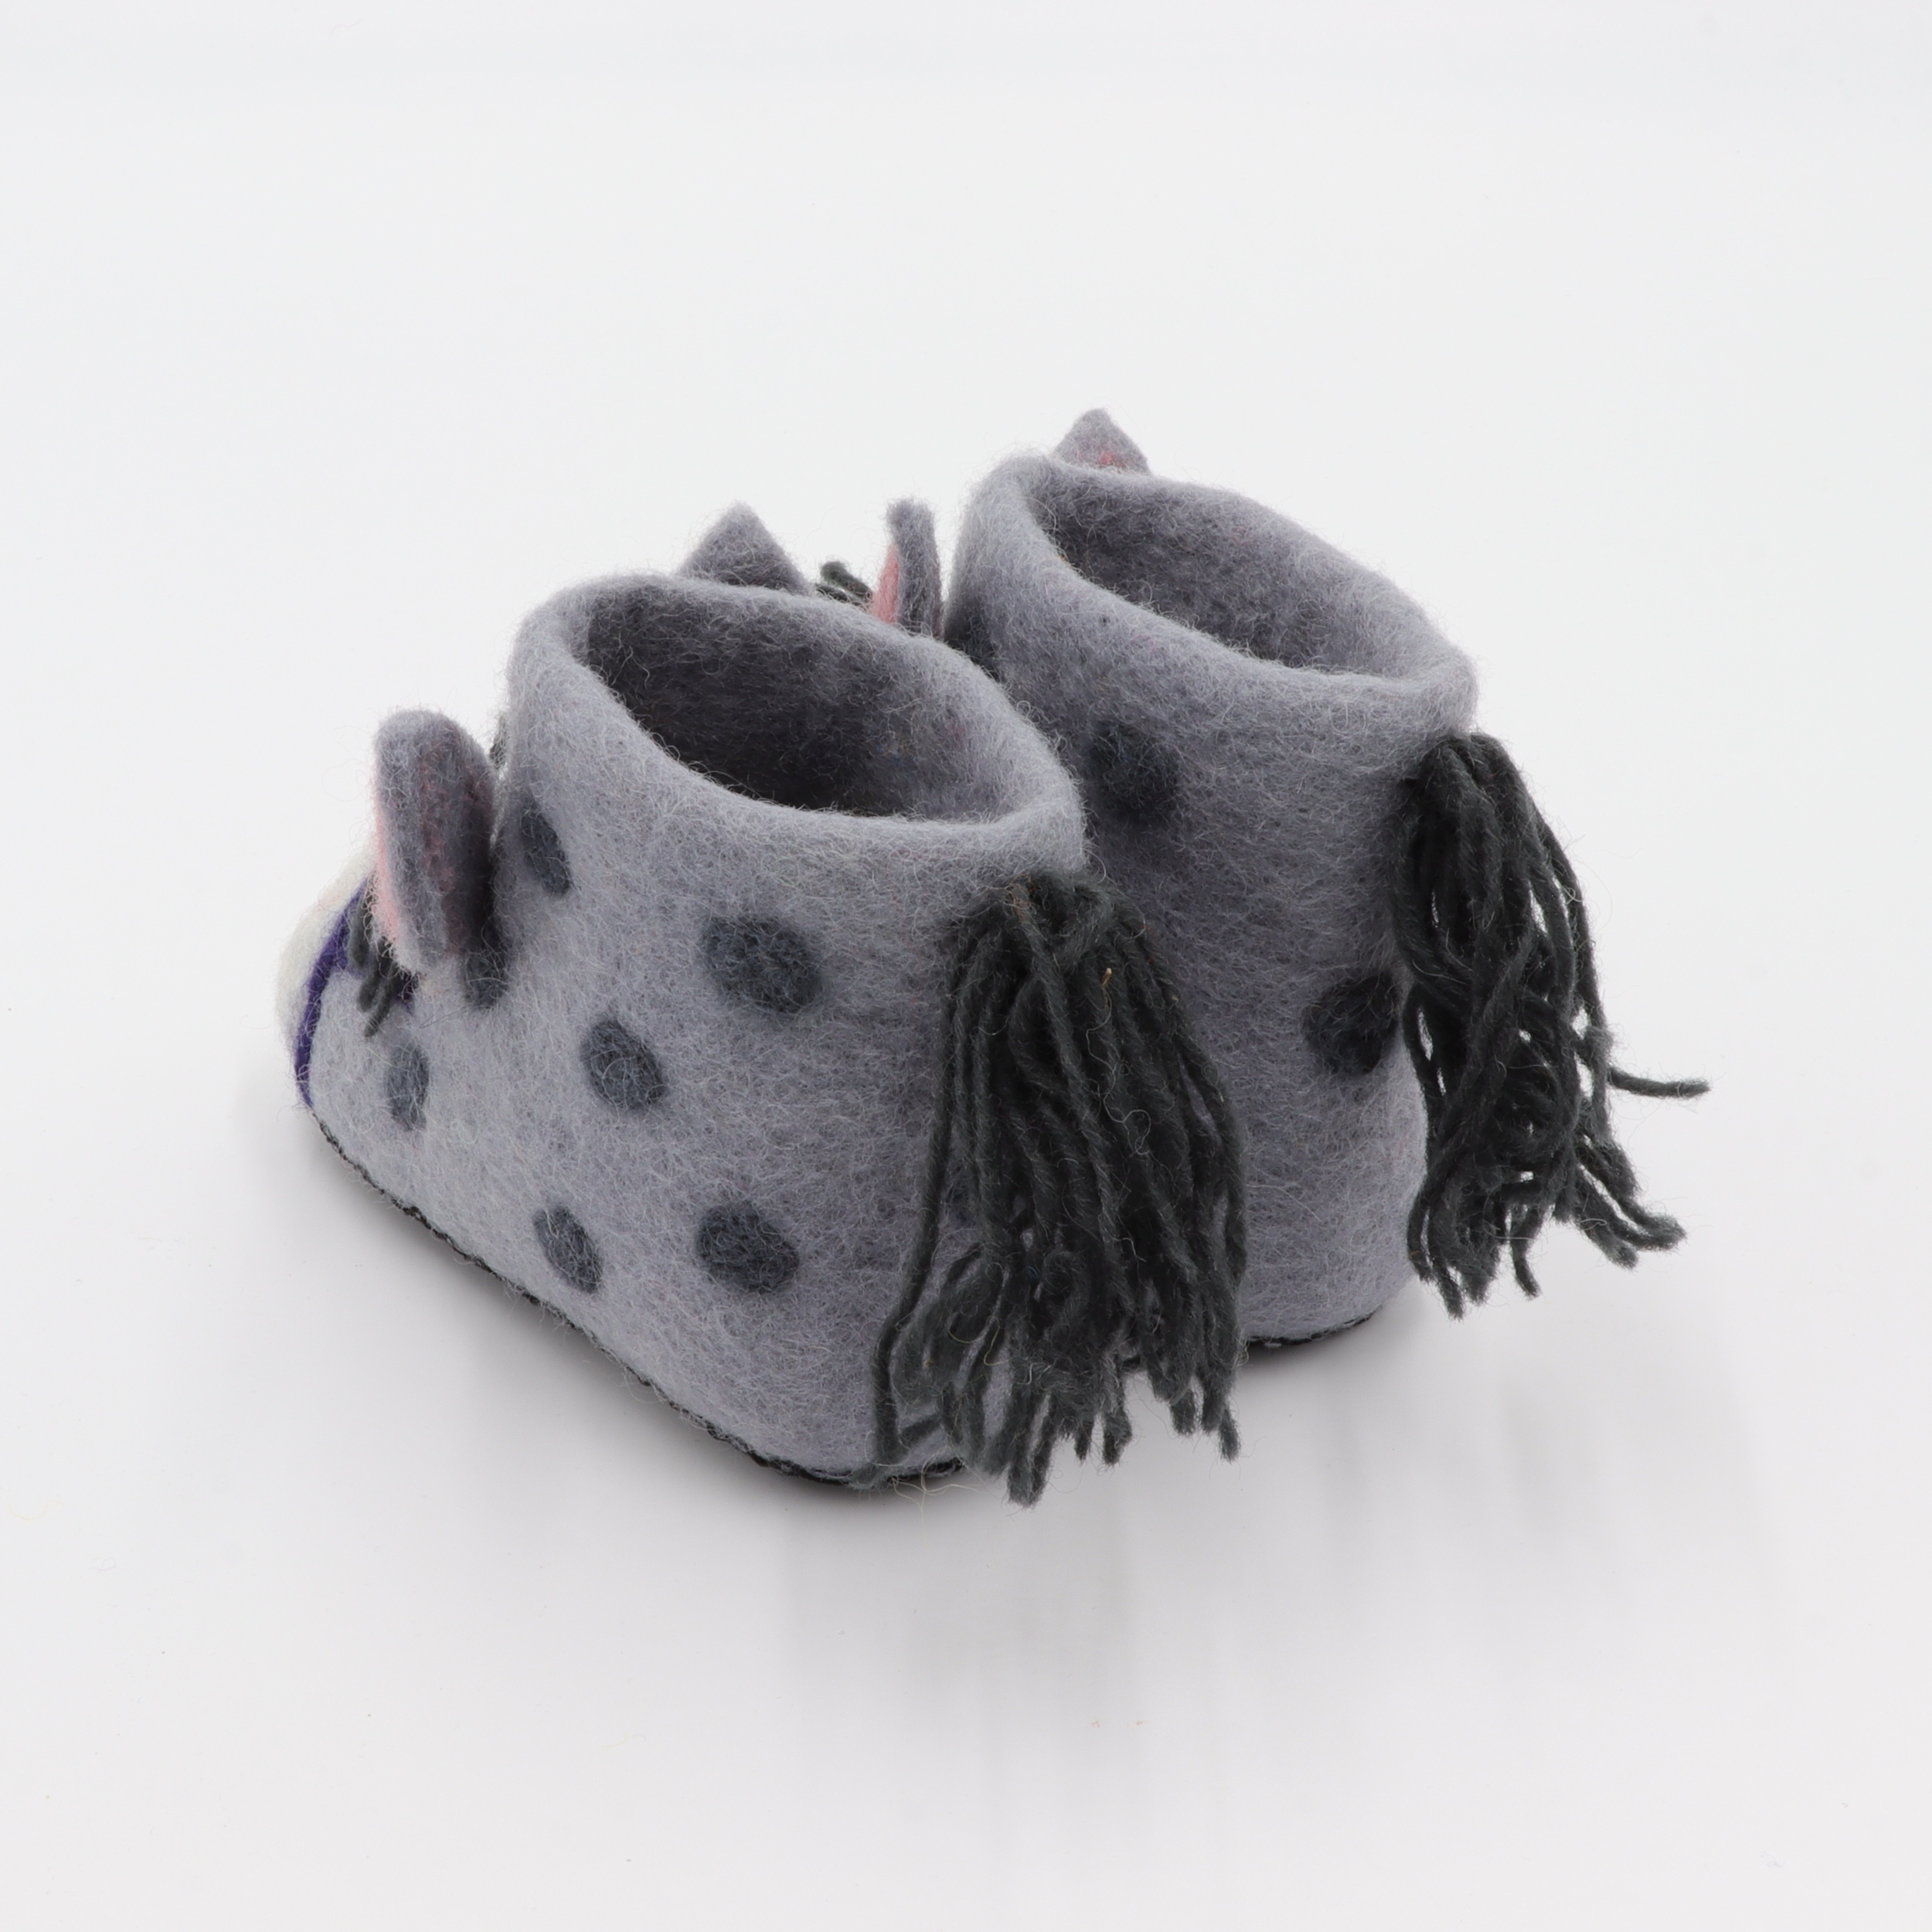 Schuhe aus Filz für Kinder - Der Graue Esel - rutschfeste Sohle aus Wildleder